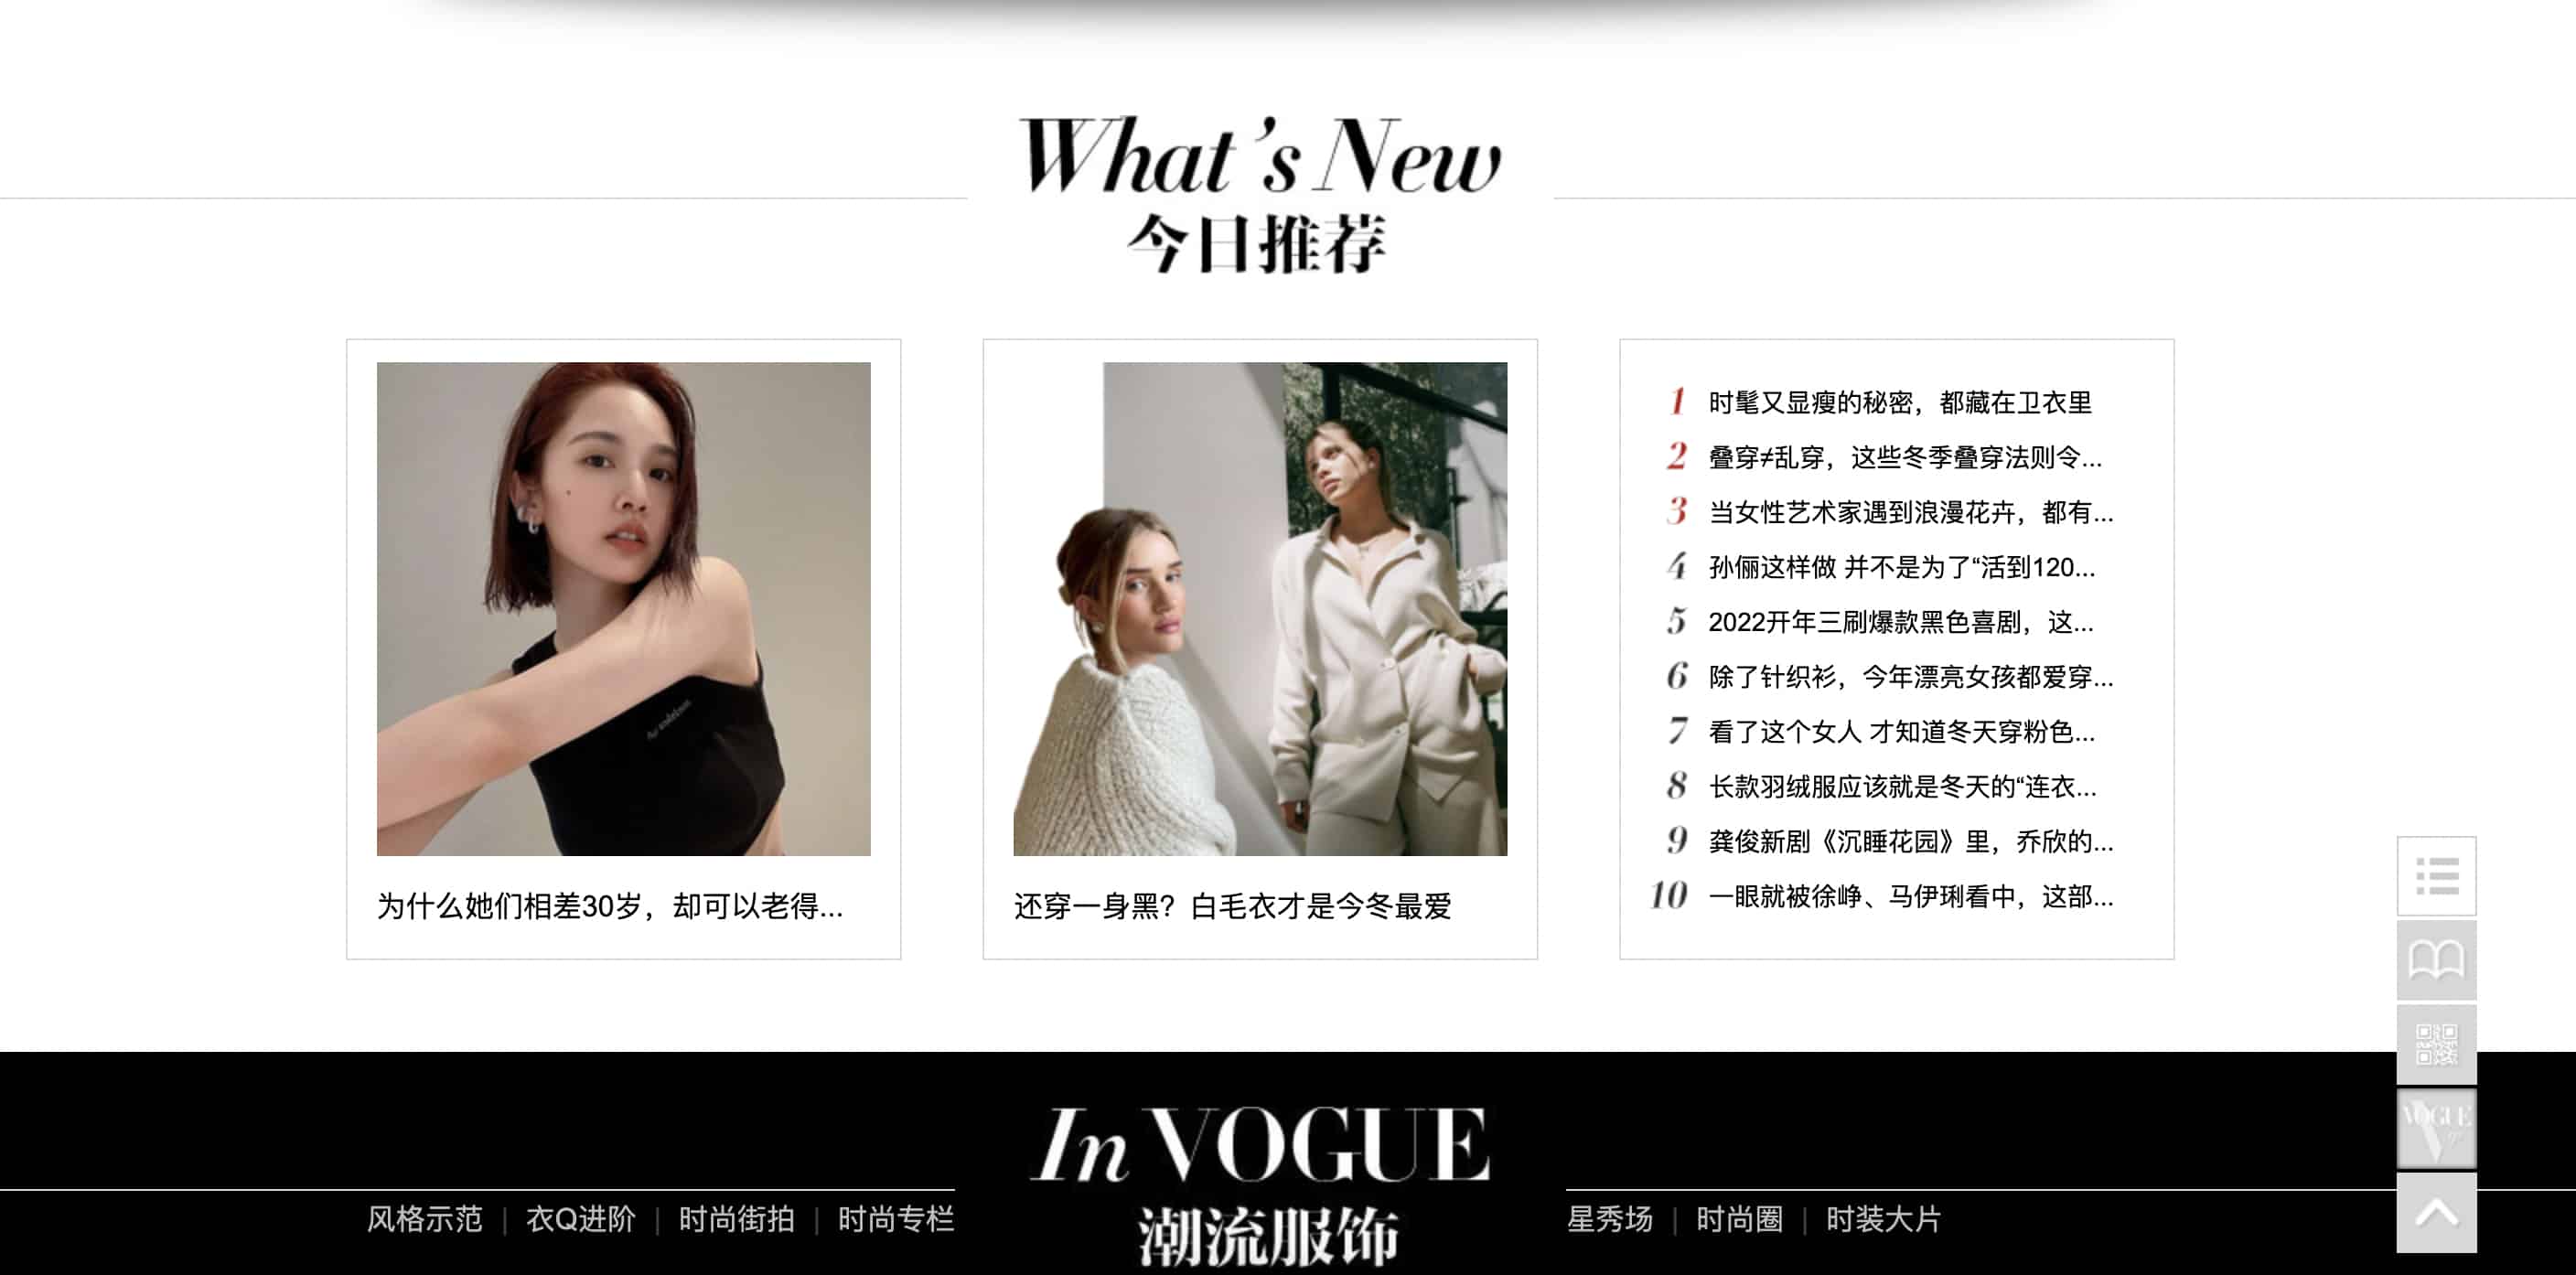 Ejemplo de sitio web con segmentación demográfica - Vogue China